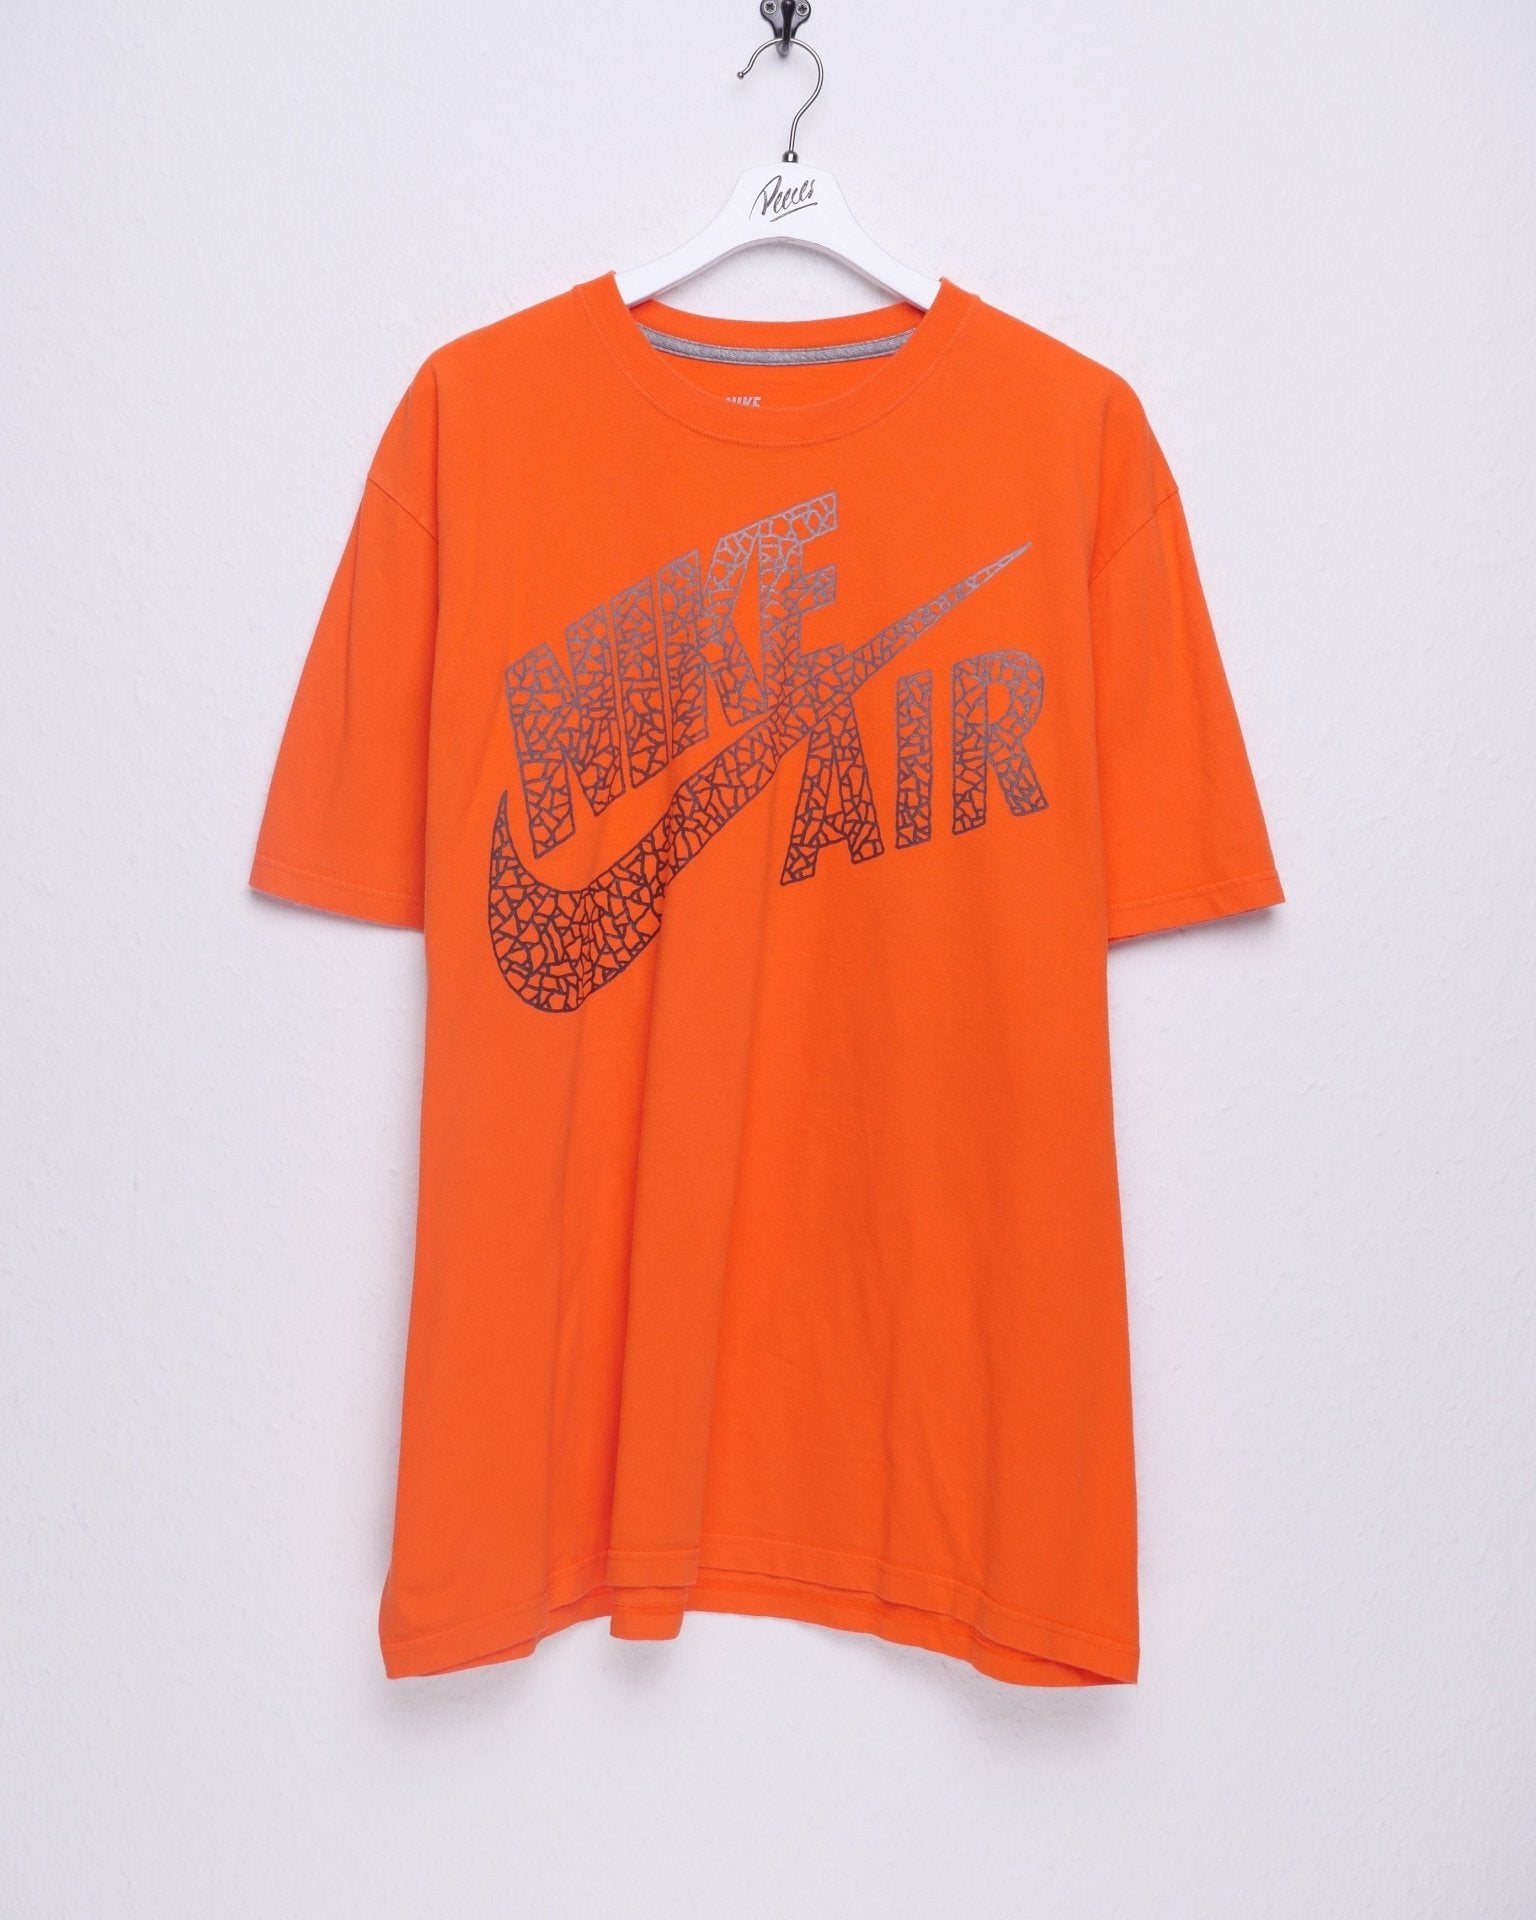 nike Air printed Logo orange Shirt - Peeces